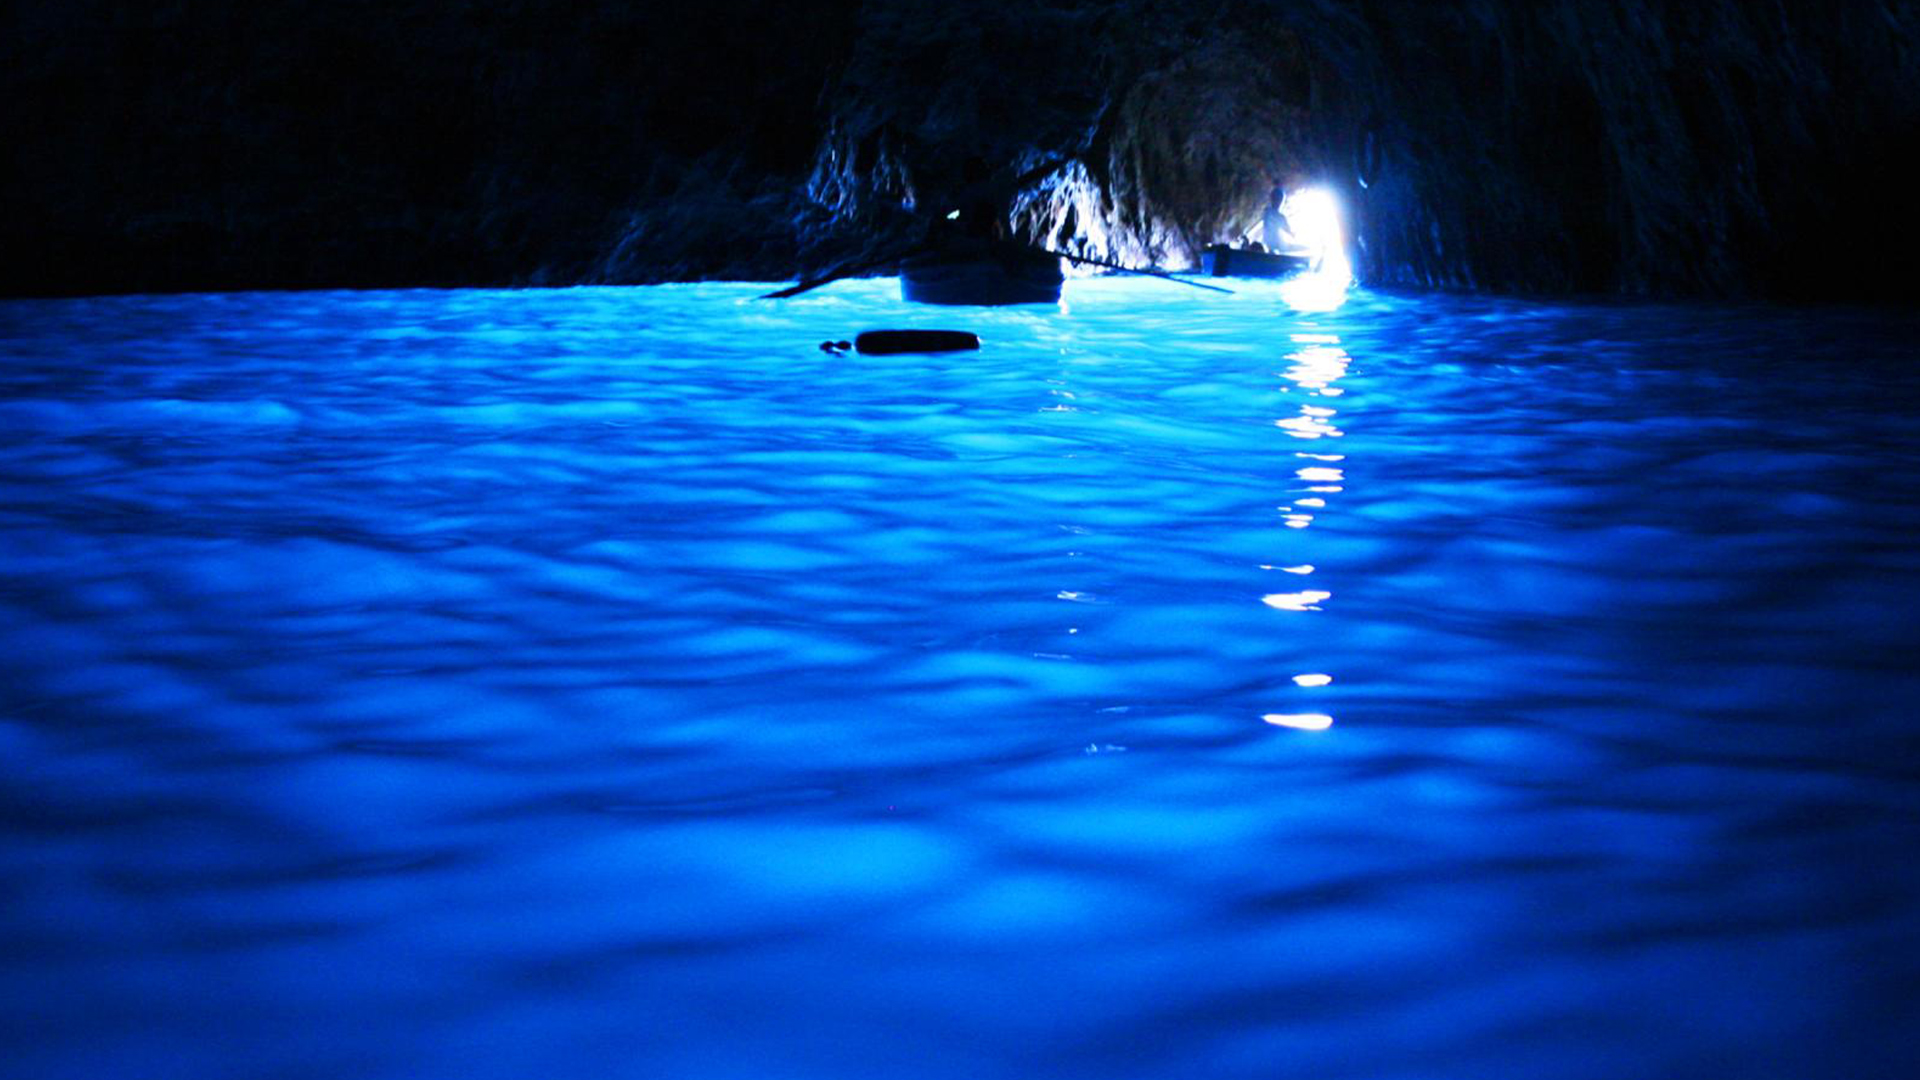 Синята пещера на Капри е служила като храм на римските богове на морето и е била използвана за частно къпане от император Тиберий, който е имал дворец на острова.